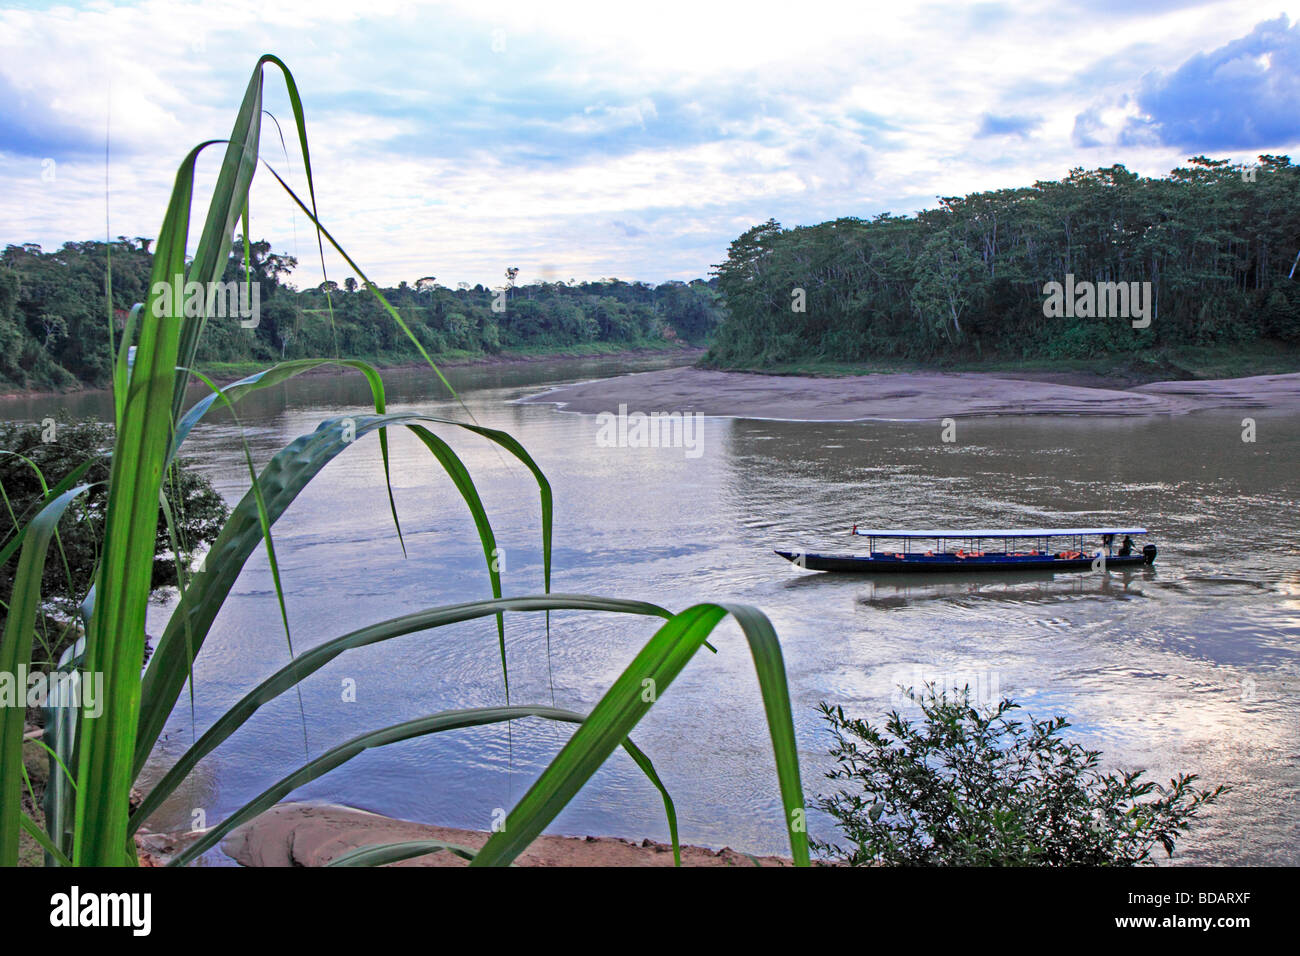 Bateau de tourisme sur la rivière Tambopata, Réserve nationale de Tambopata, Amazonie, Pérou, Amérique du Sud Banque D'Images